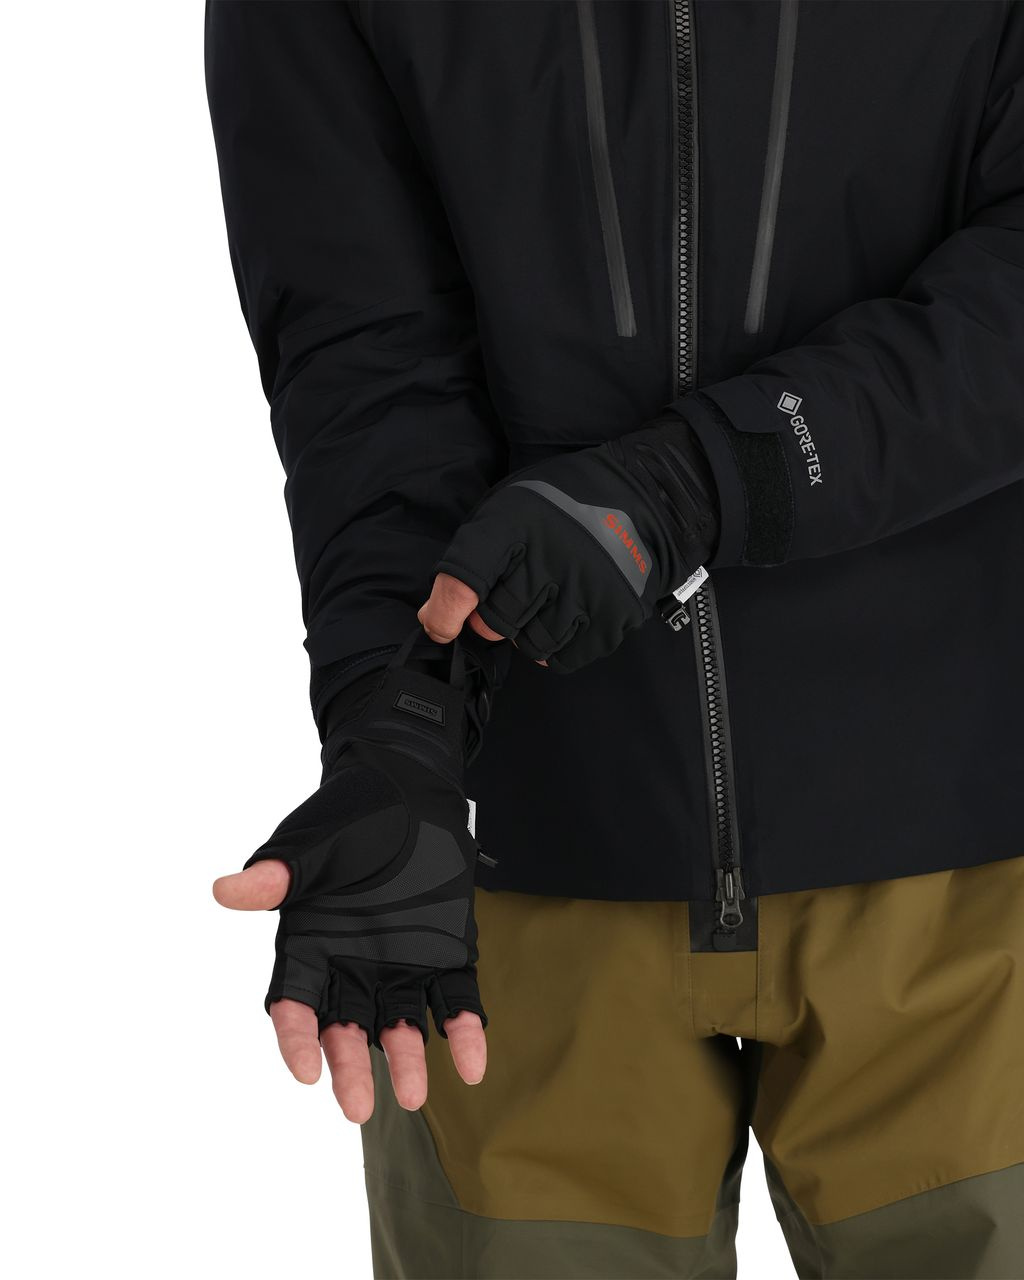 Simms Windstopper® Half-Finger Glove Black